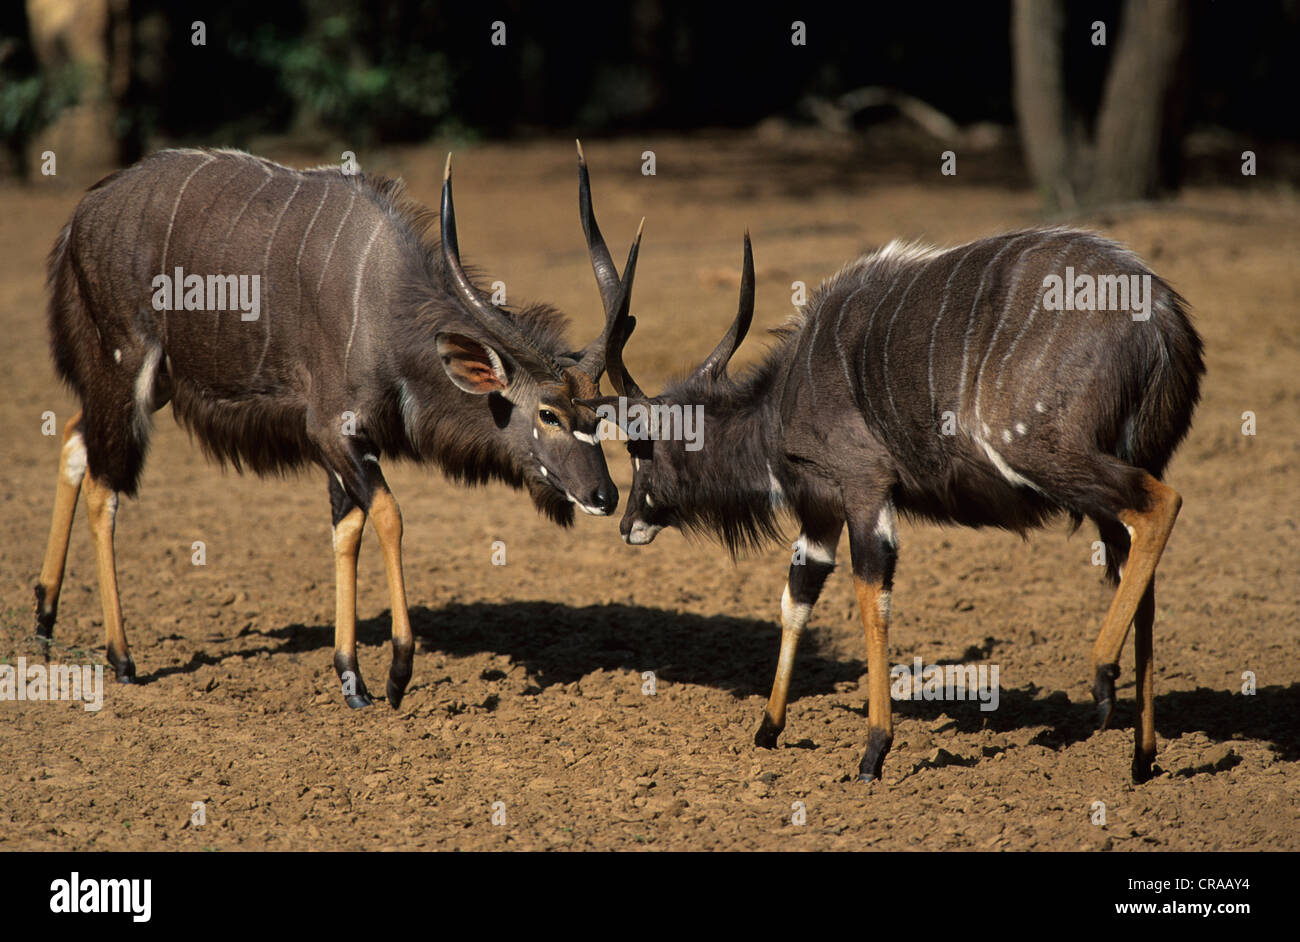 Nyala (Tragelaphus angasii), males fighting, Mkuze Game Reserve, KwaZulu-Natal, South Africa Stock Photo